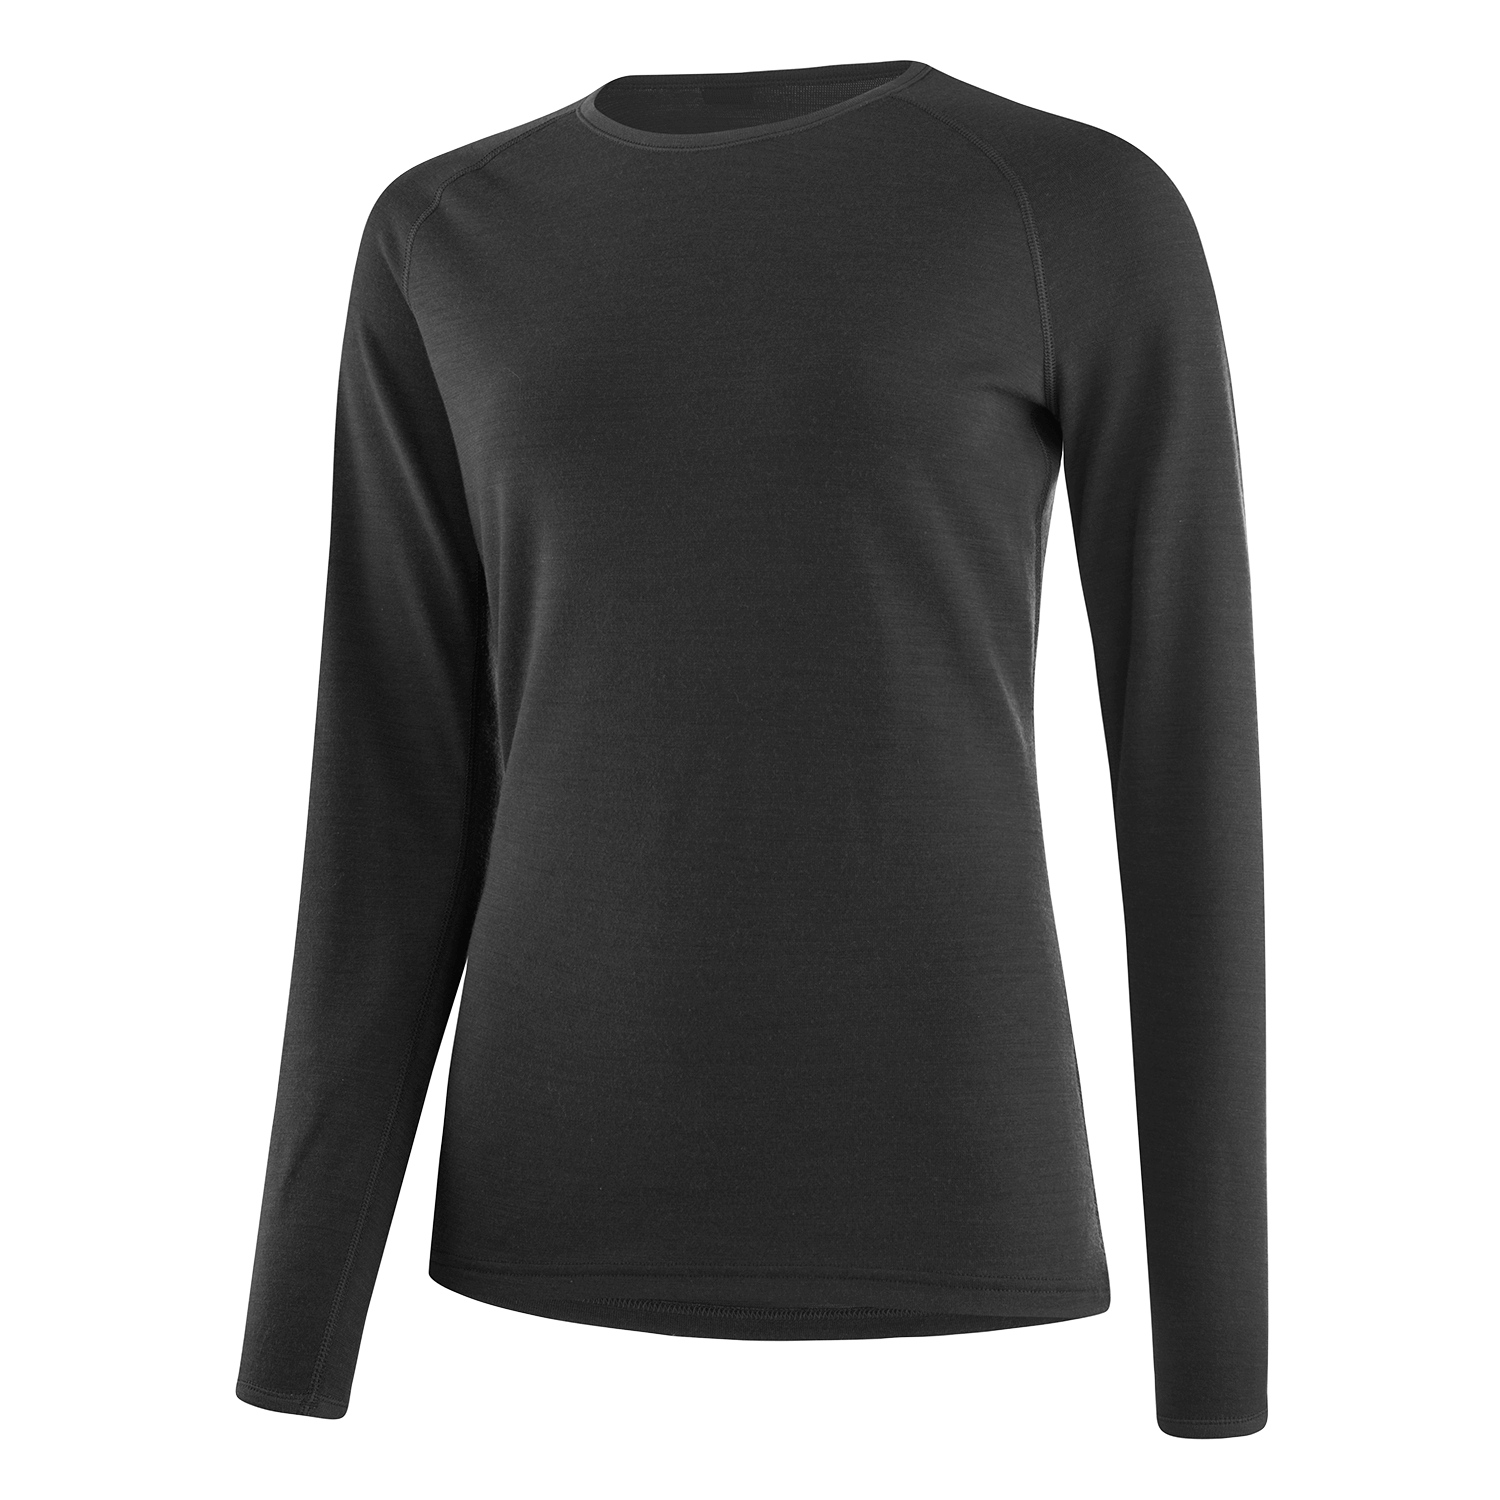 Produktbild von Löffler Transtex® Merino Langarm-Unterhemd Damen - schwarz 990